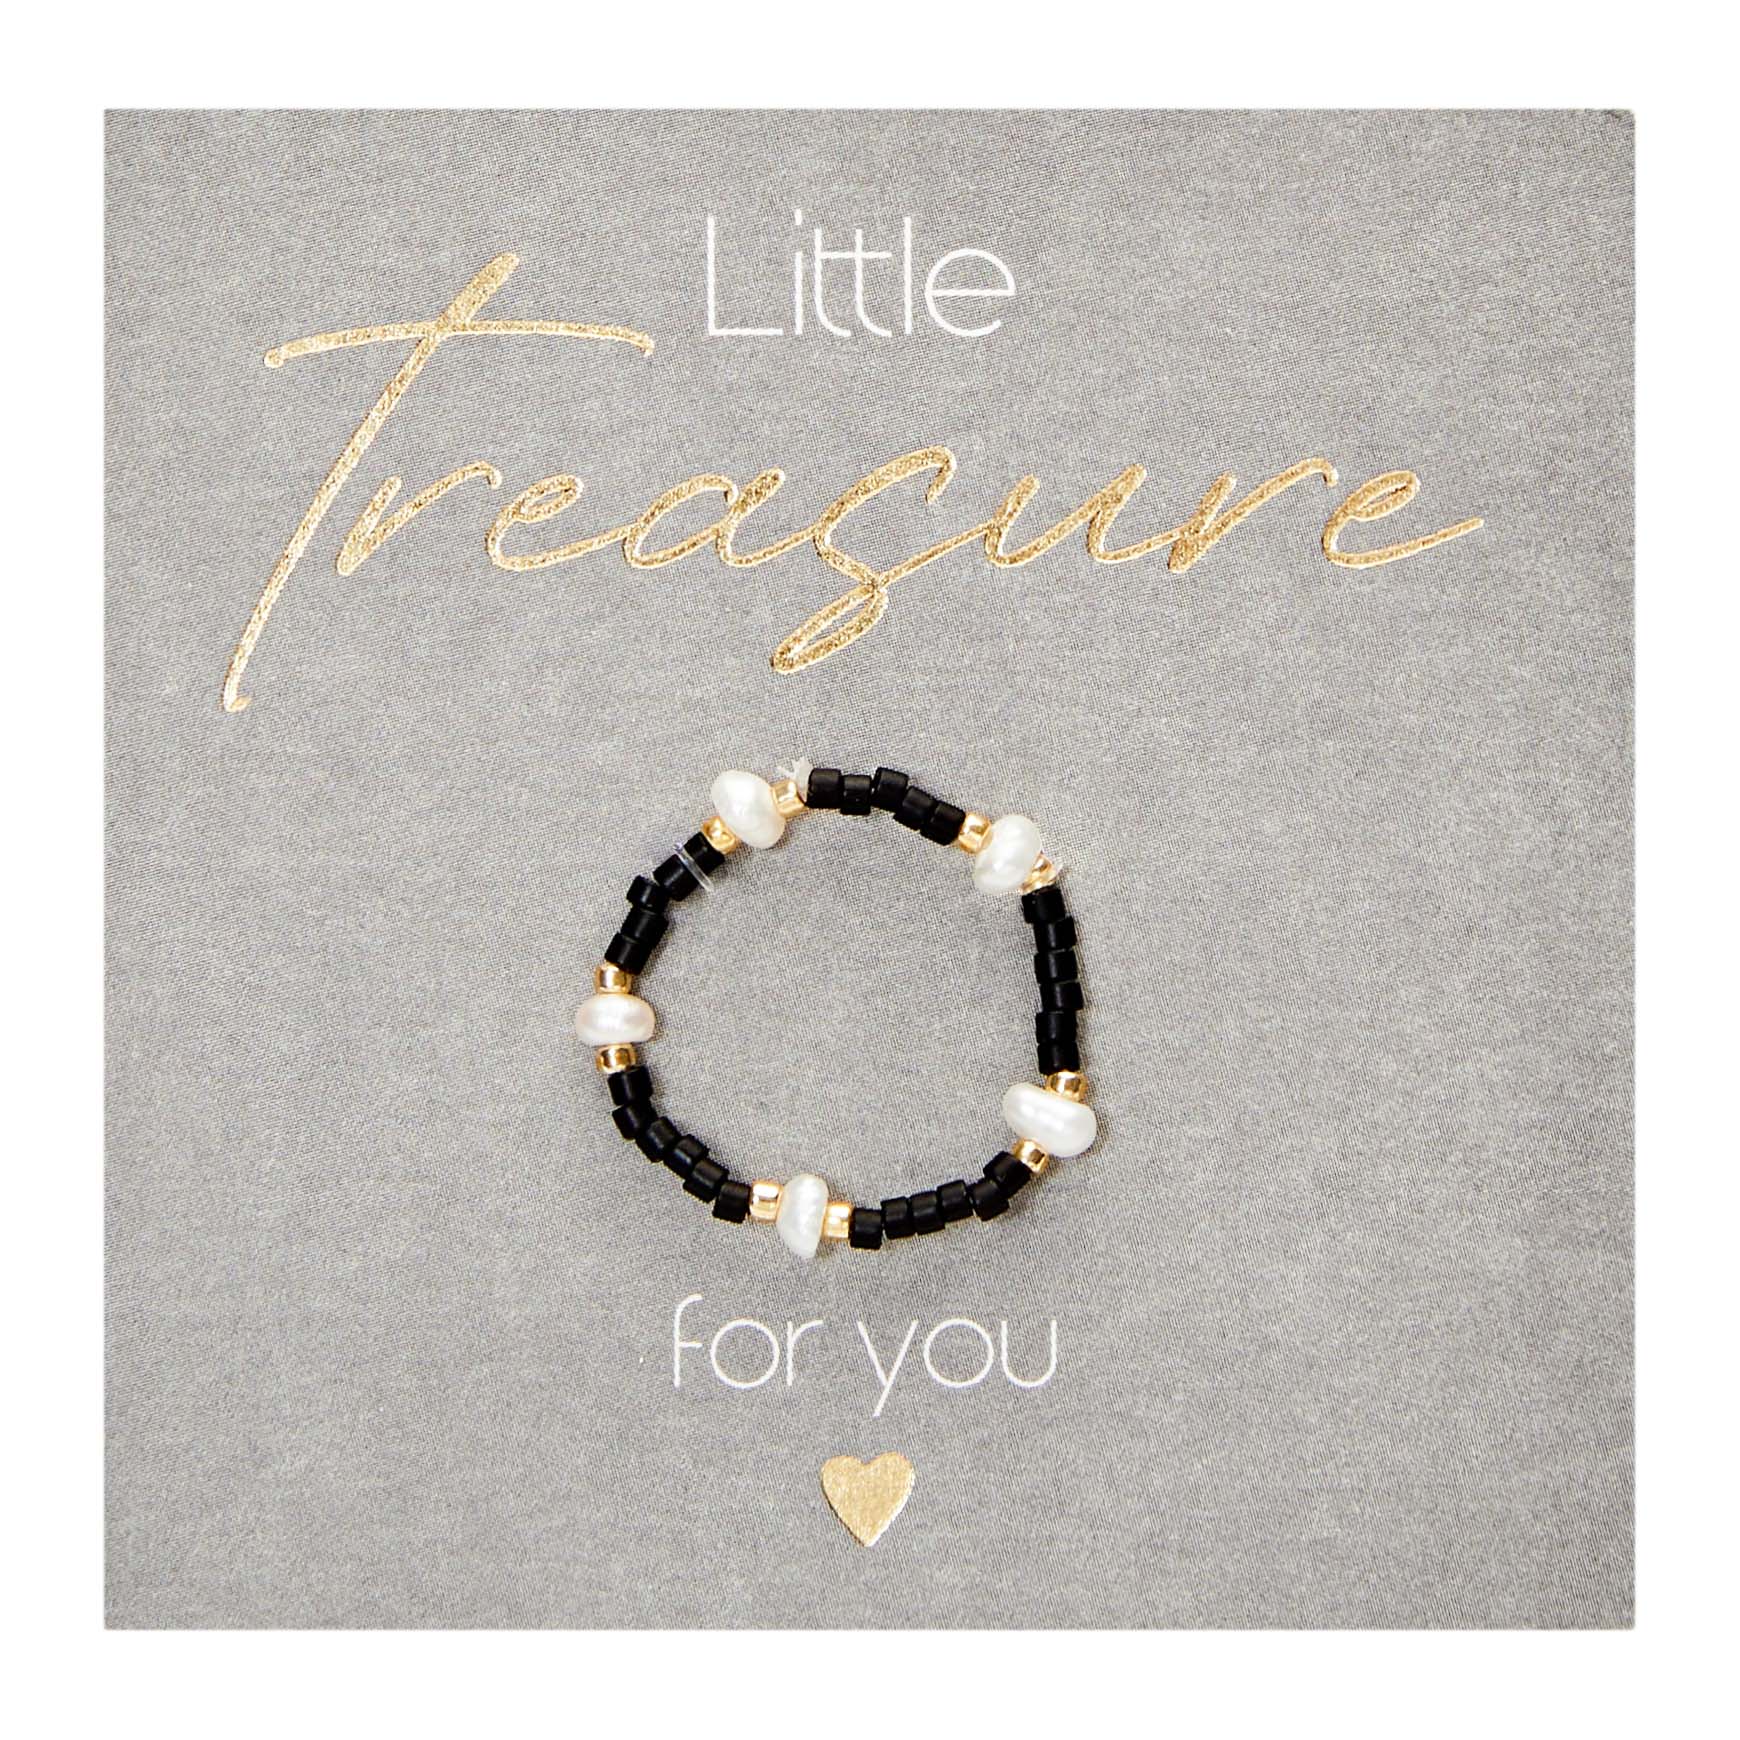 Display package bracelets  "Little Treasure"